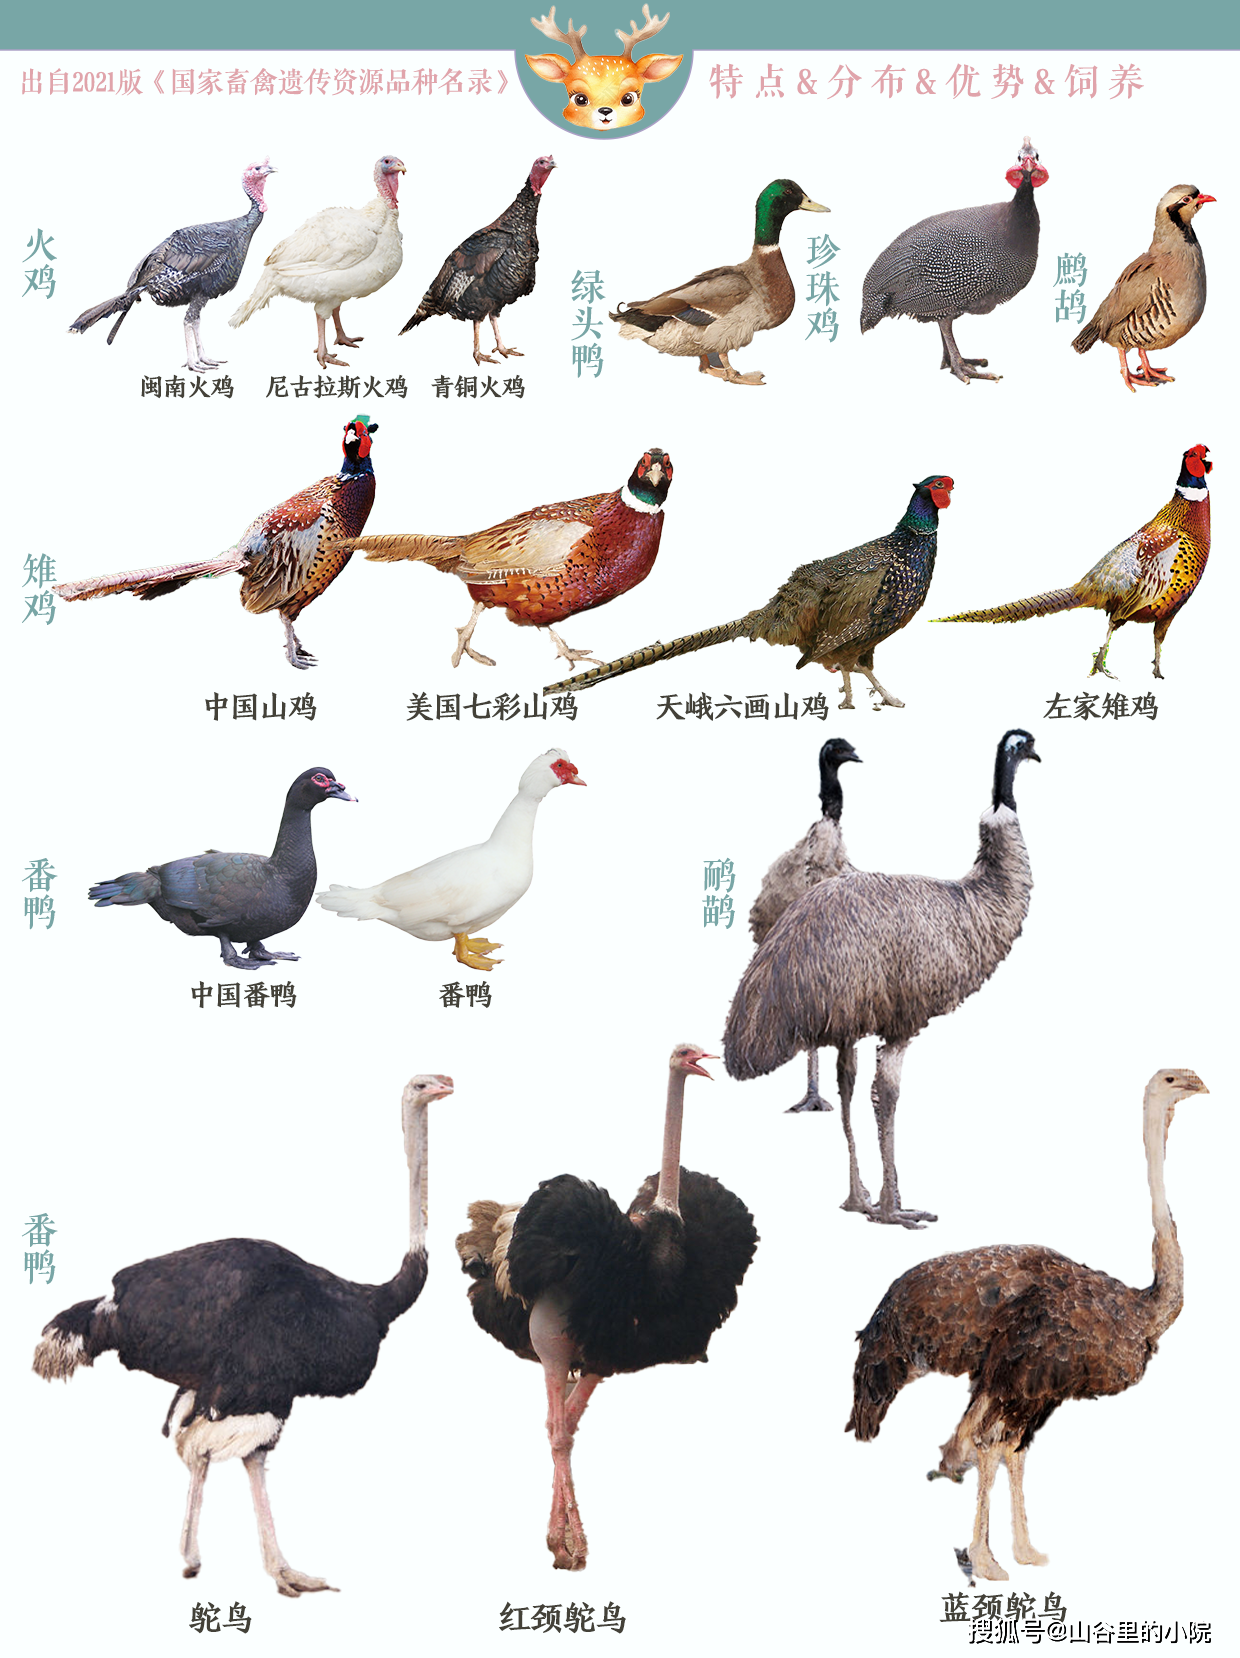 常见的有16种,包括梅花鹿马鹿驯鹿羊驼火鸡珍珠鸡雉鸡鹧鸪番鸭绿头鸭